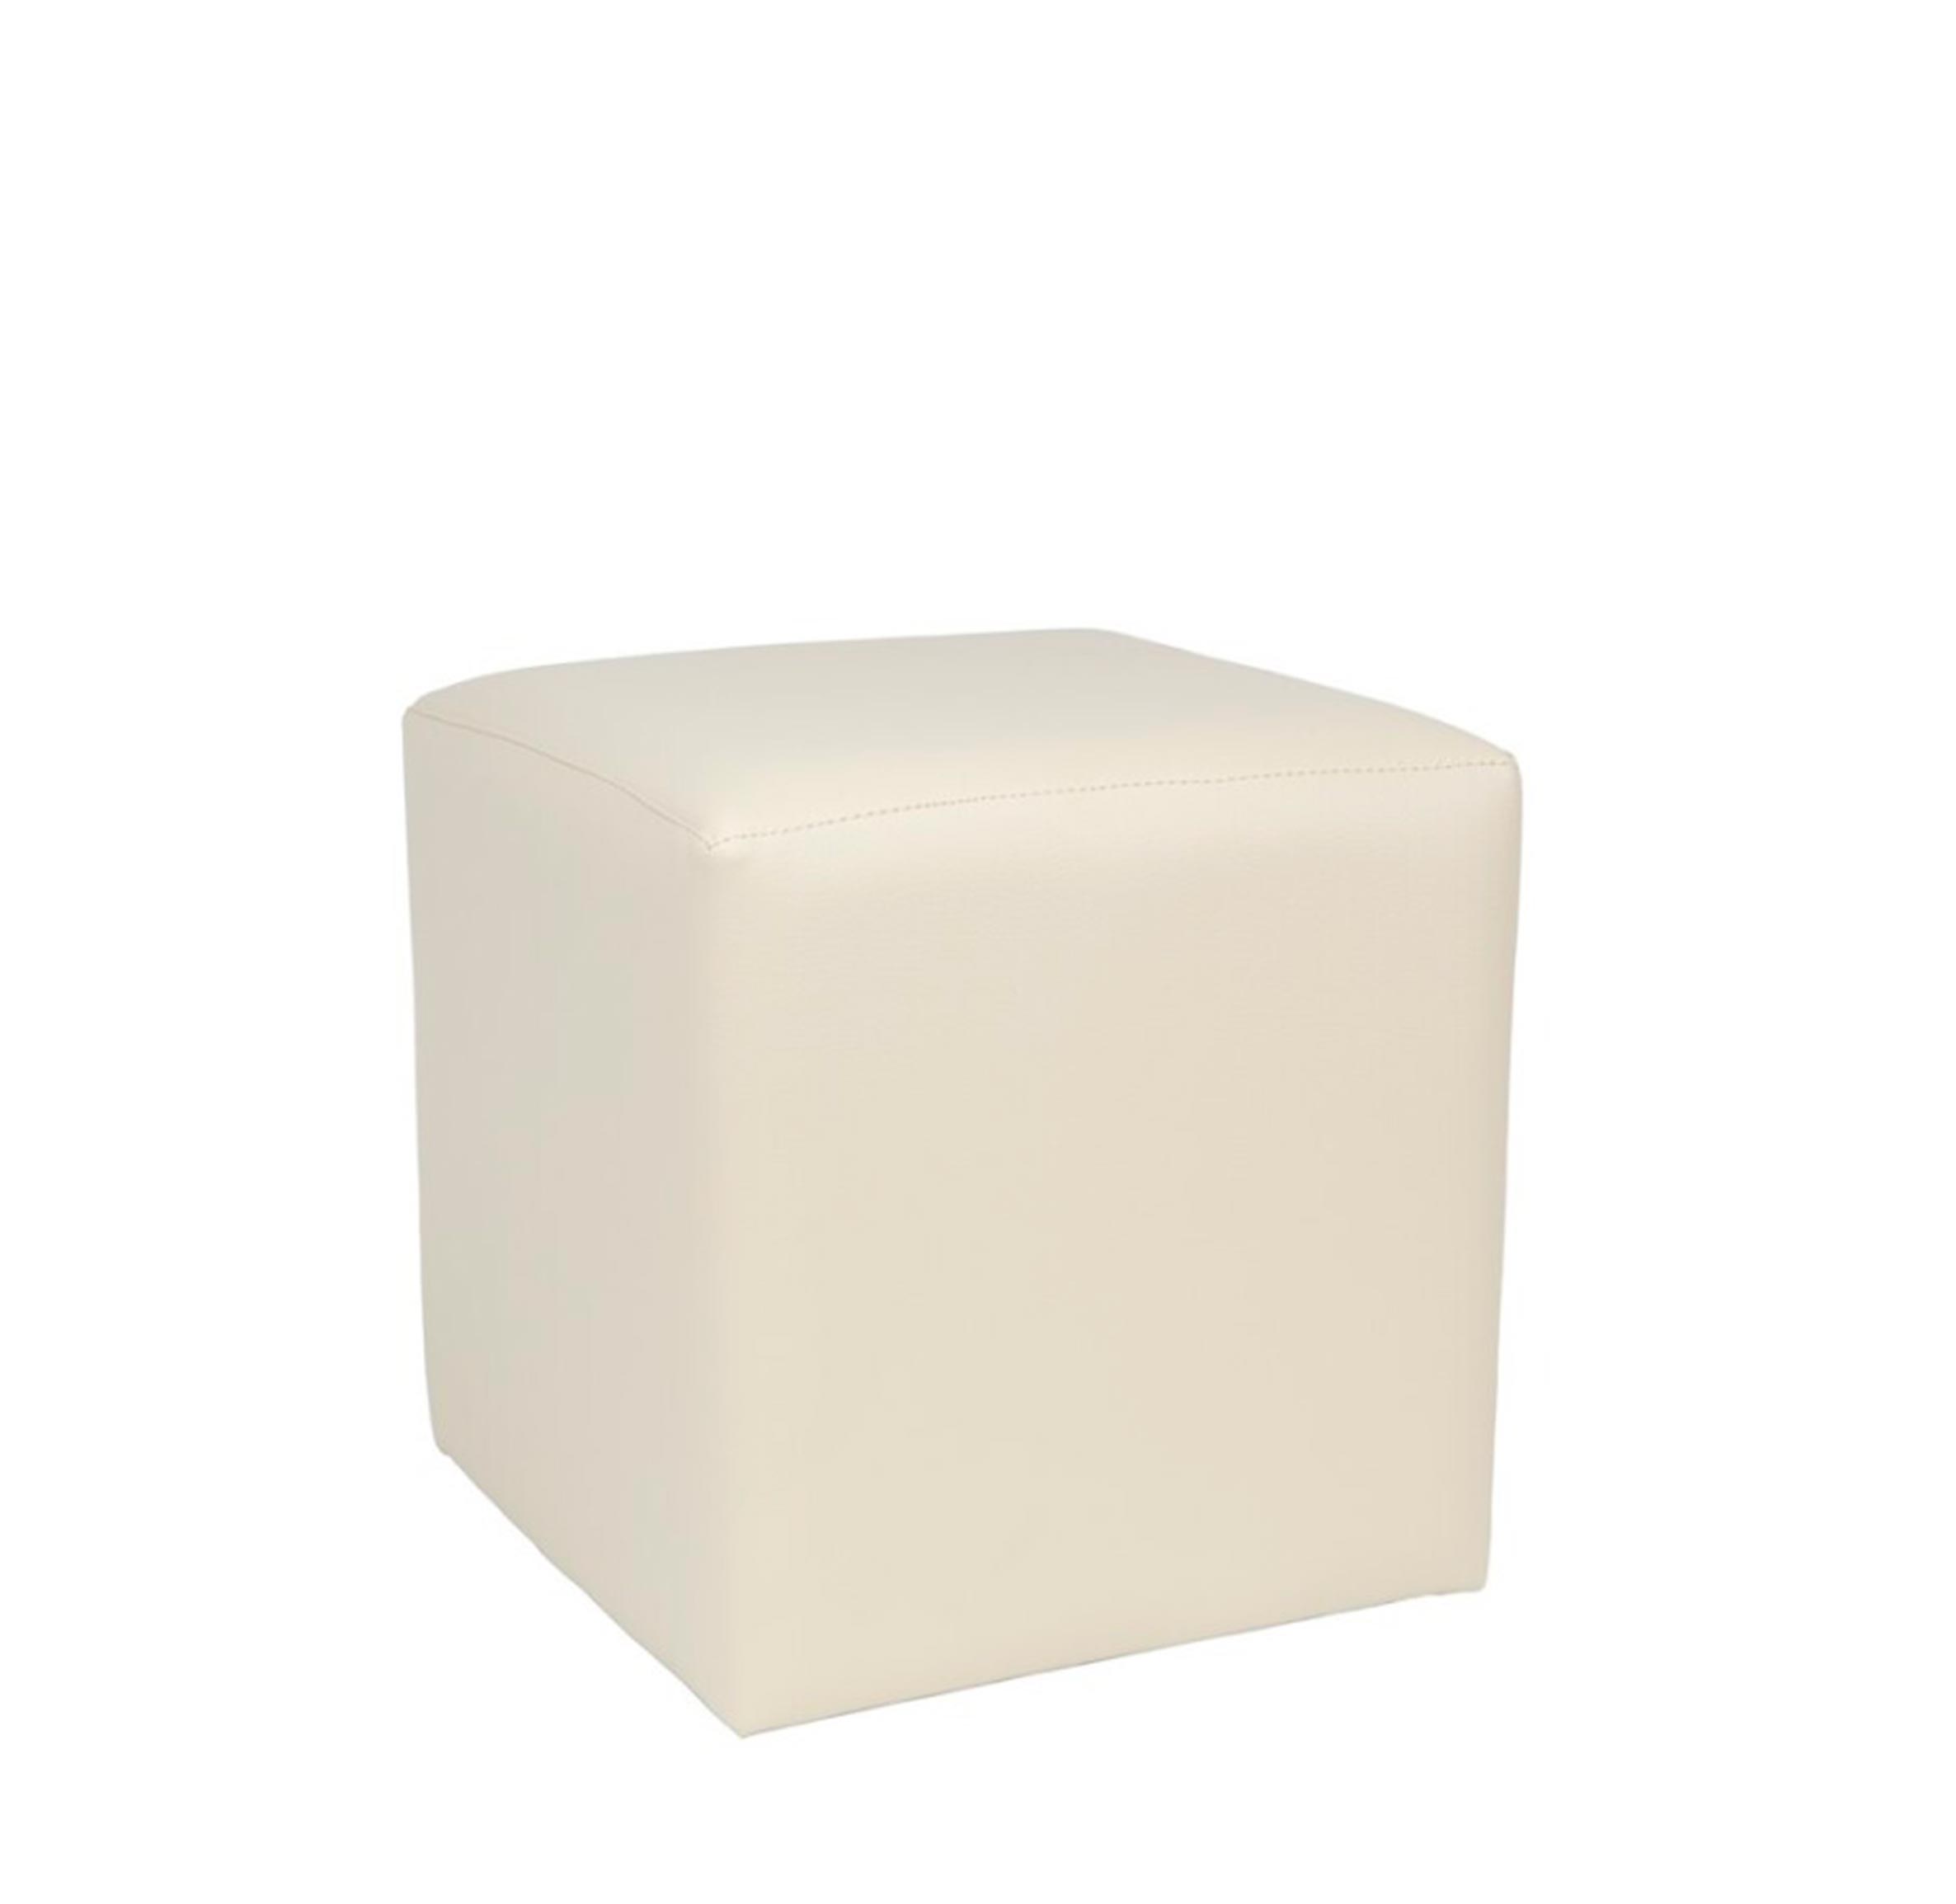 Felis SECRET Pouf Collection Puf contenedor cuadrado con funda extraíble, tejido rectangular, cuero de imitación